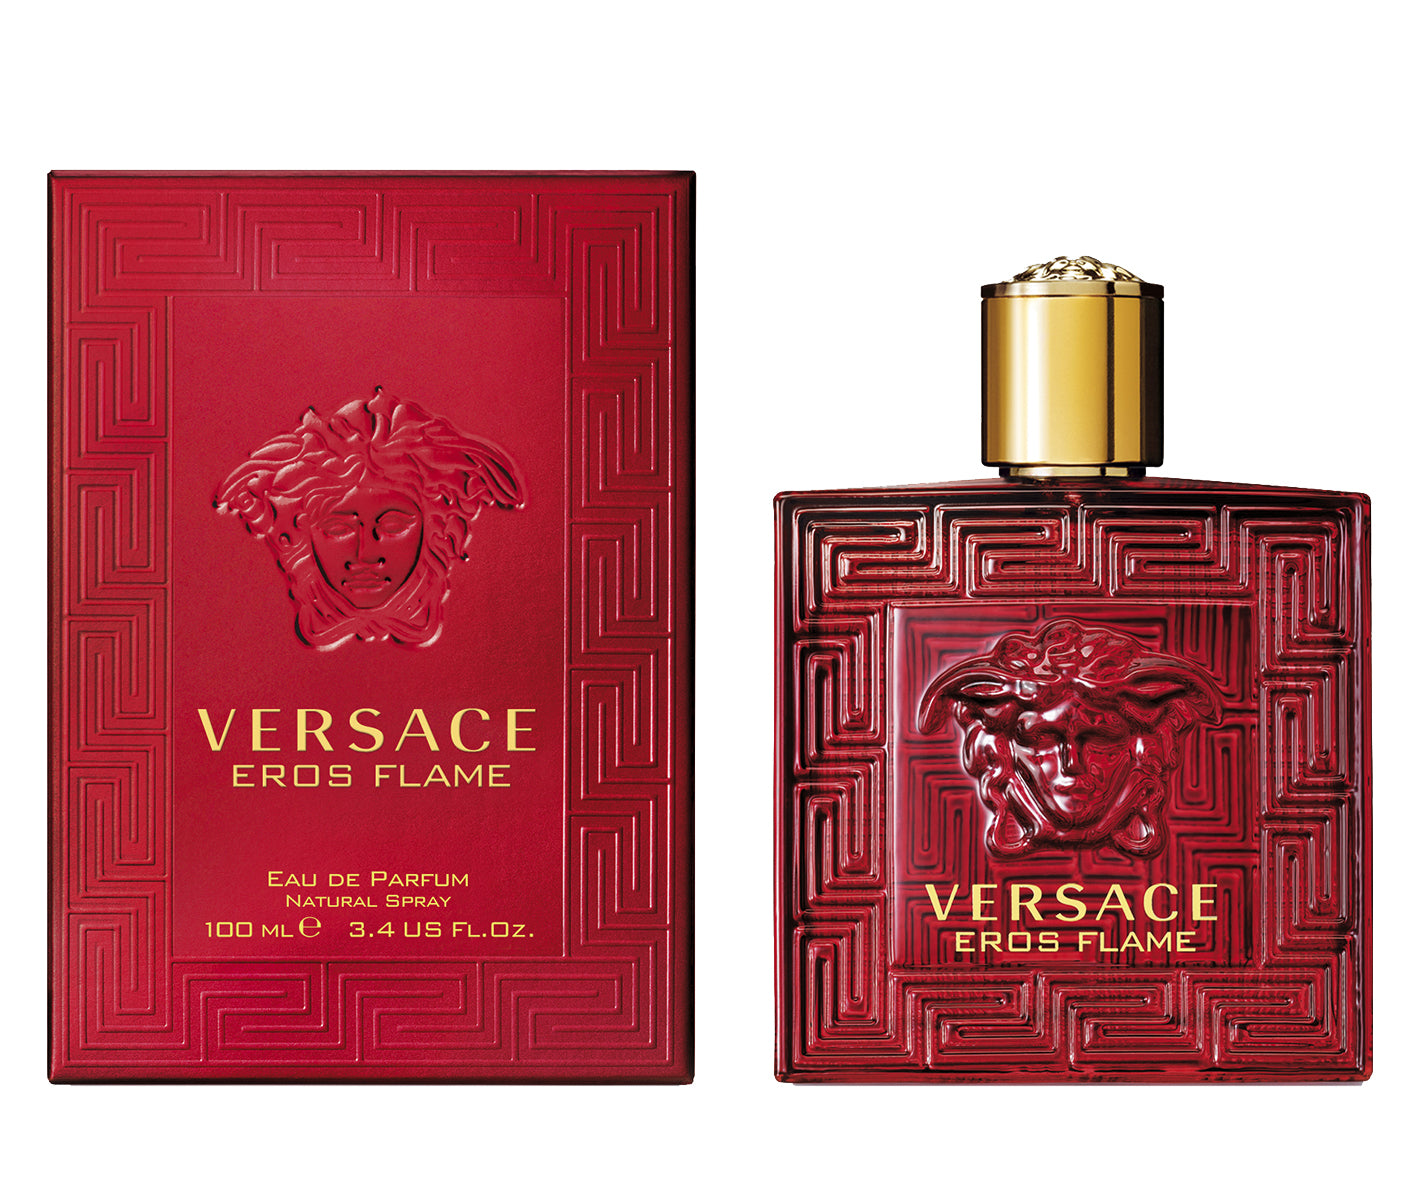 Versace Eros Flame Eau De Parfum 50 ml - RossoLaccaStore